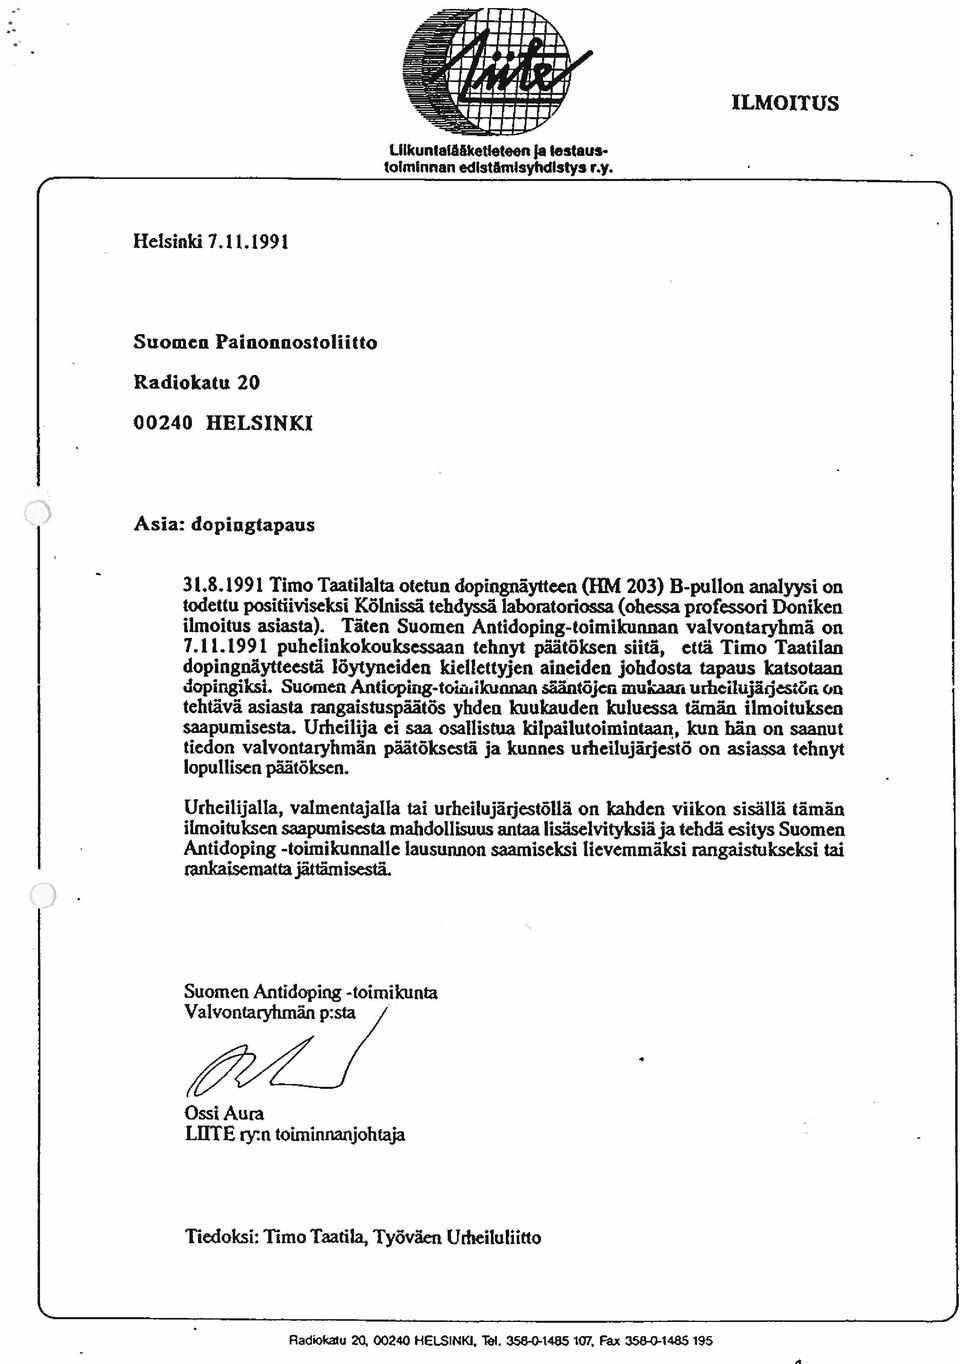 Täten Suomen Antidoping-toimikunnan valvontaryhmä on 7.11.